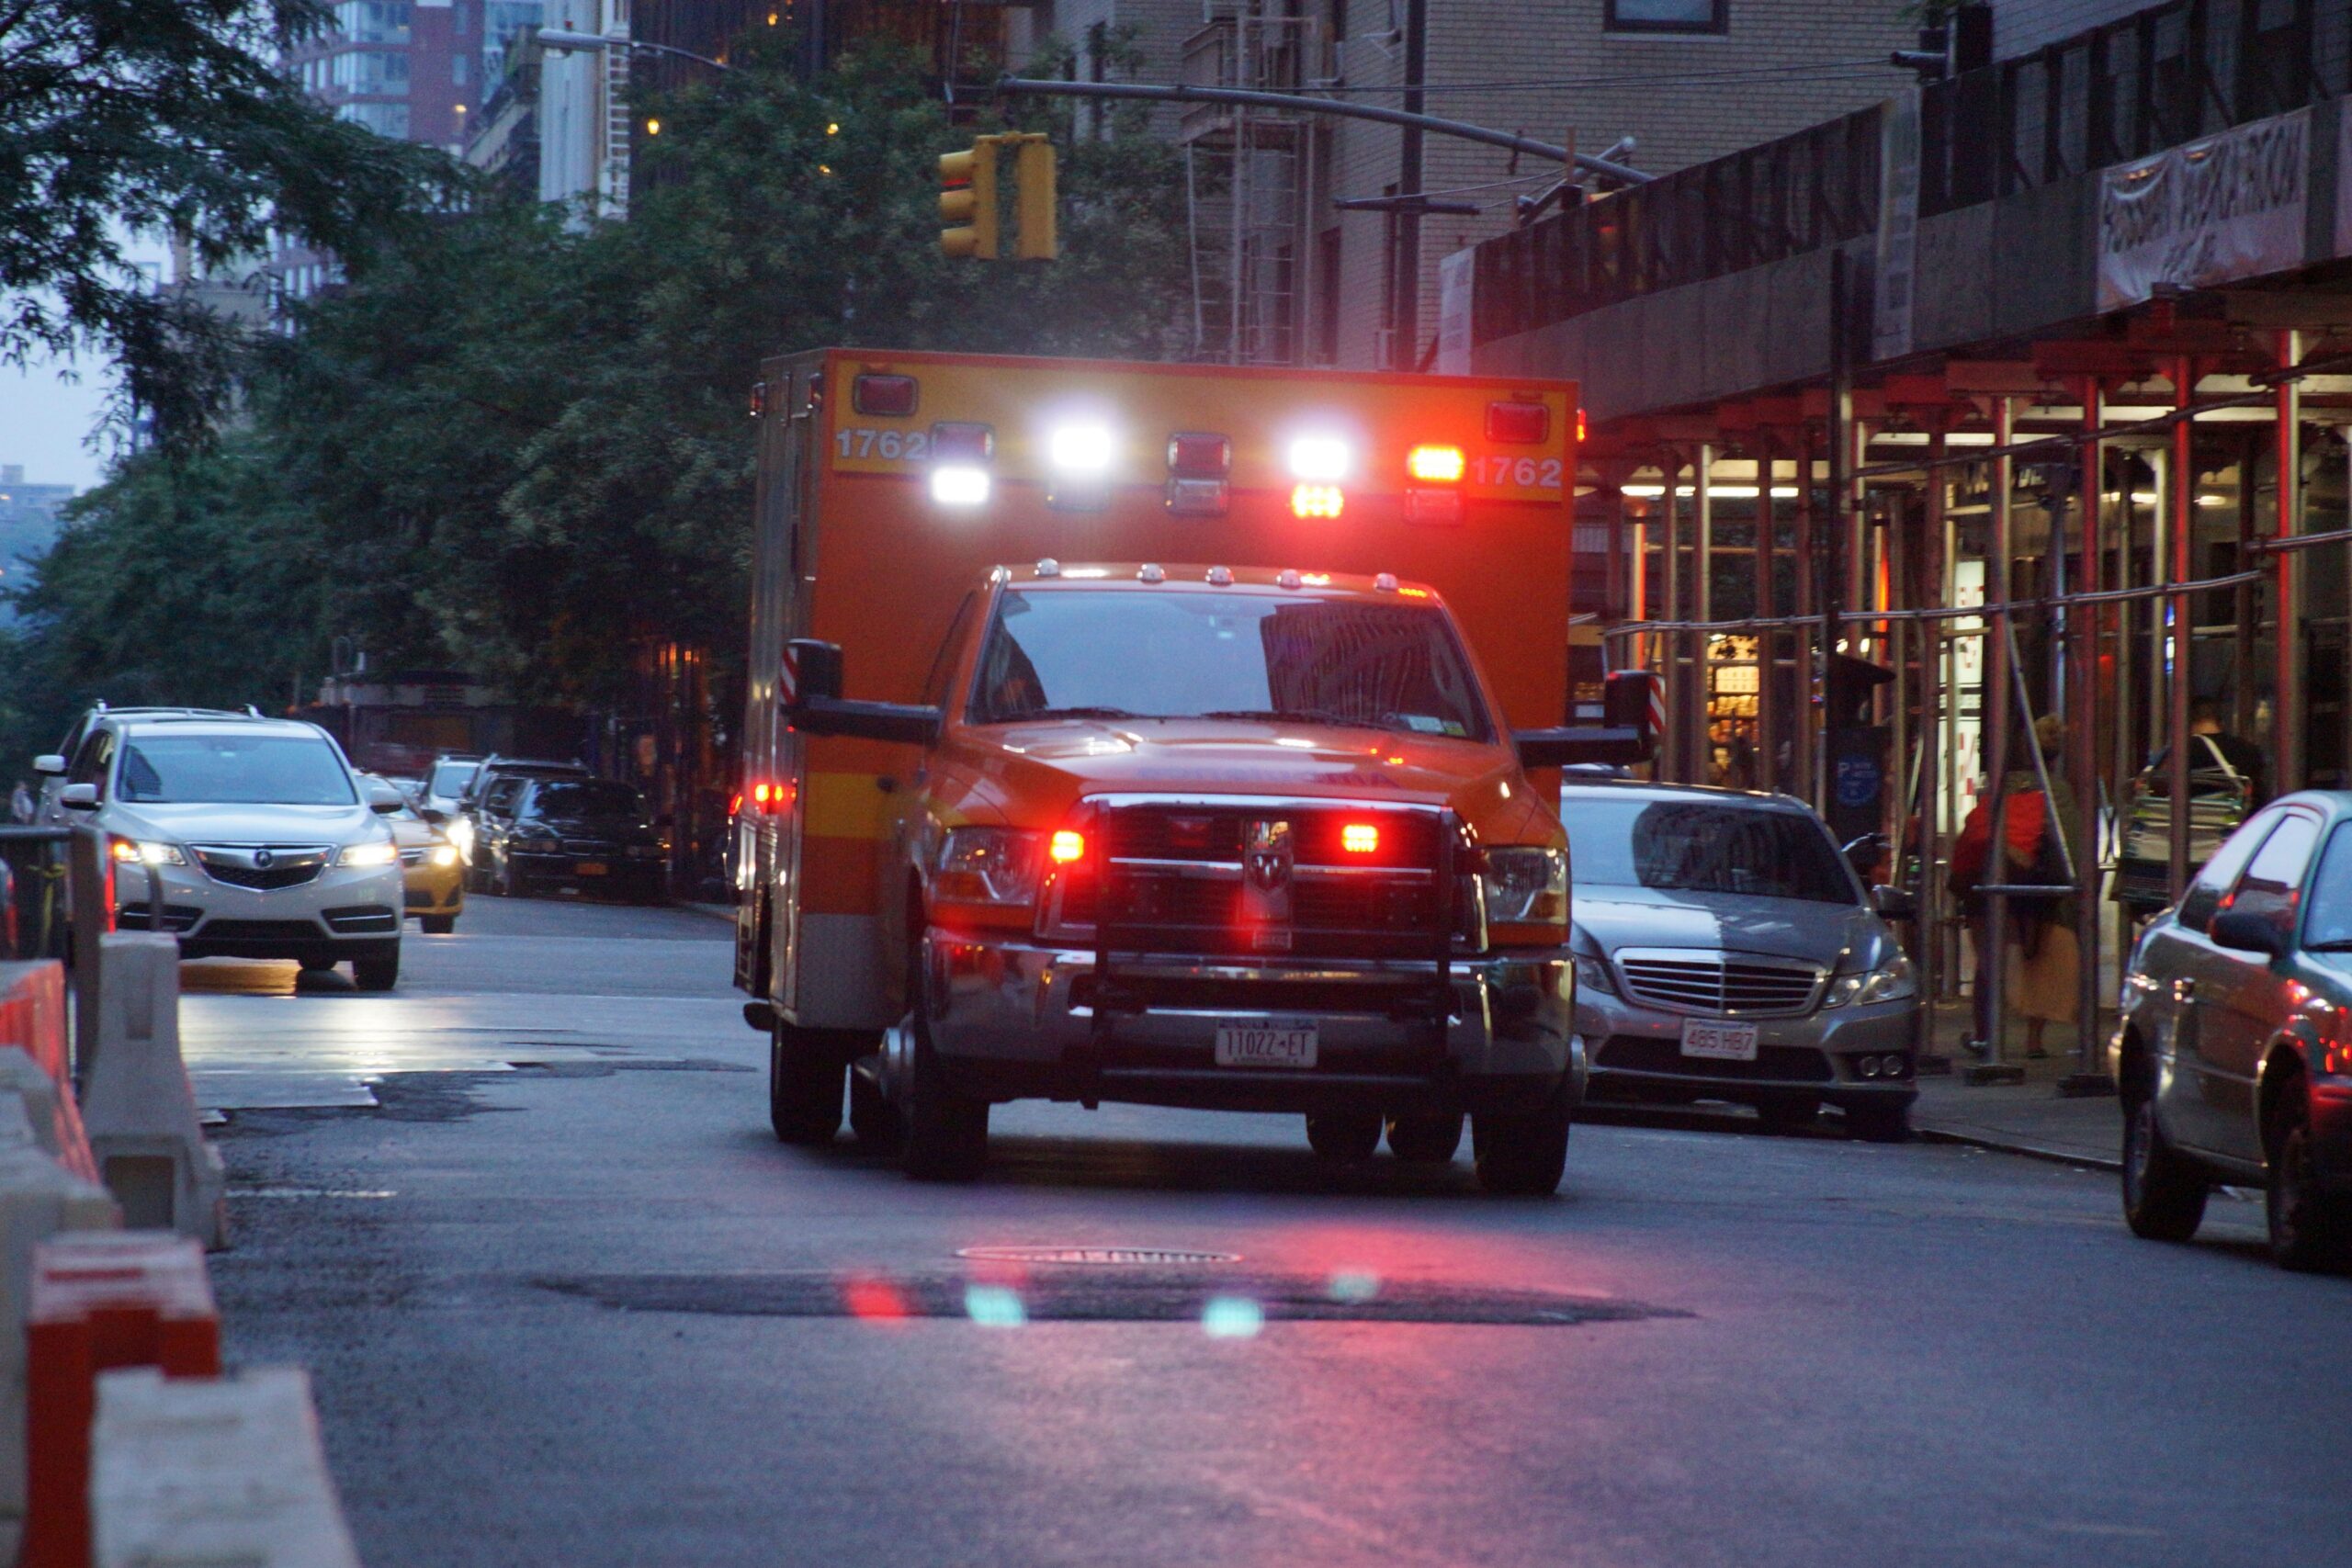 Ambulance during emergency